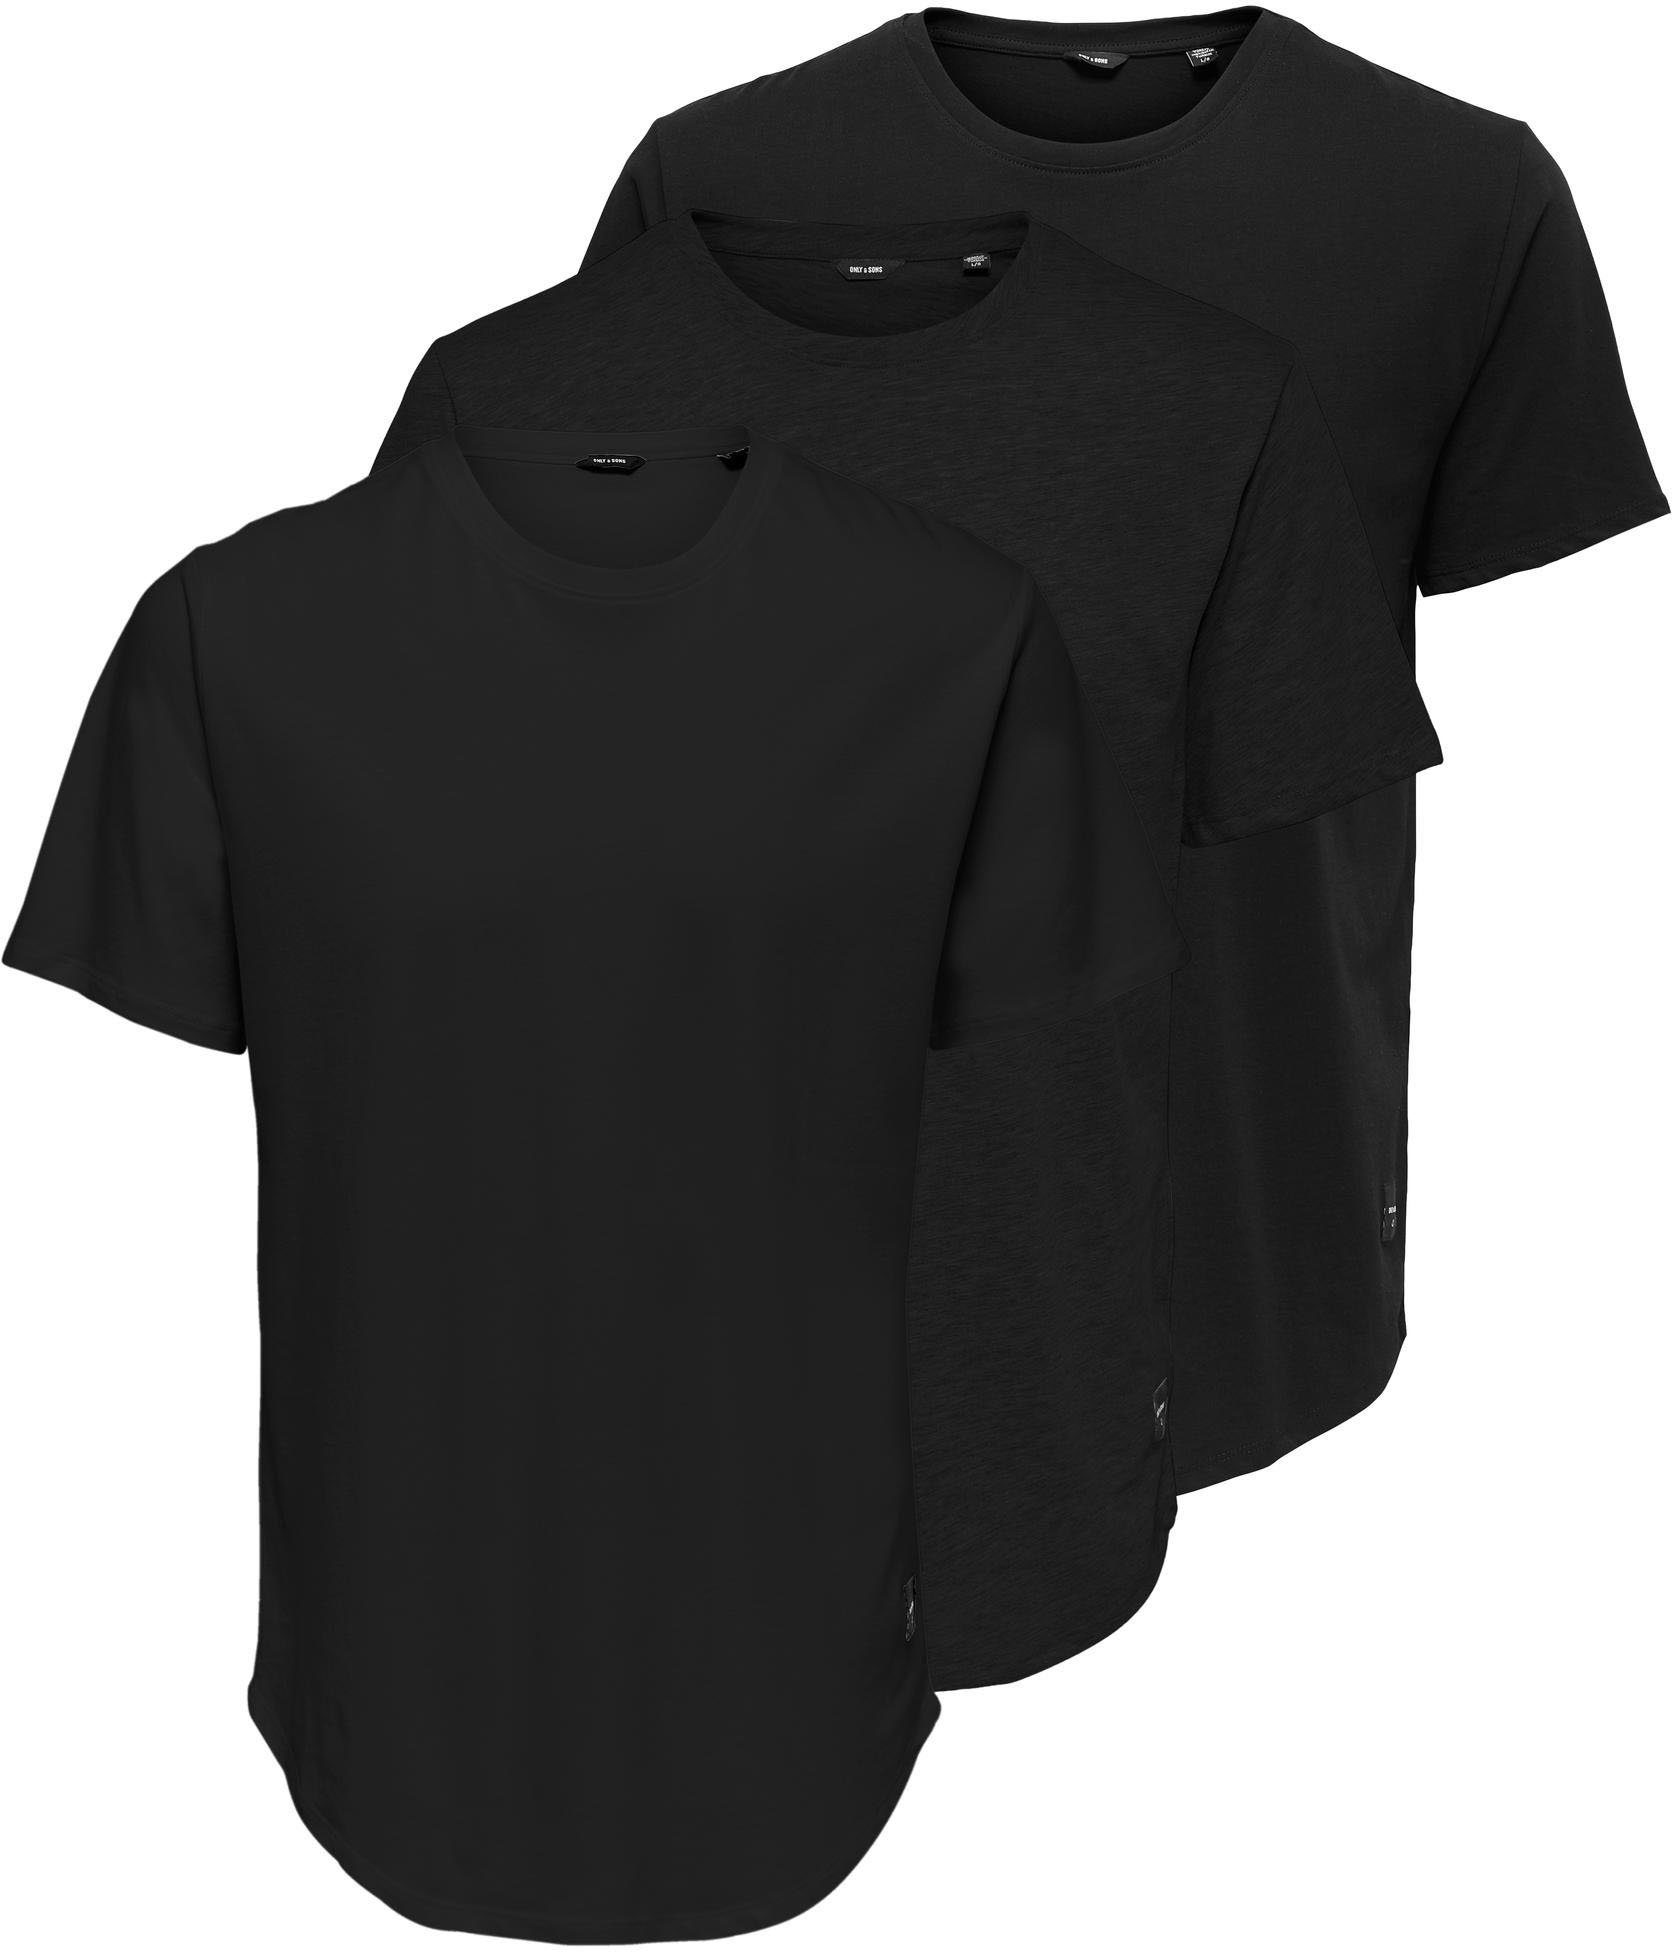 Lange schwarze T-Shirts für Herren online kaufen | OTTO